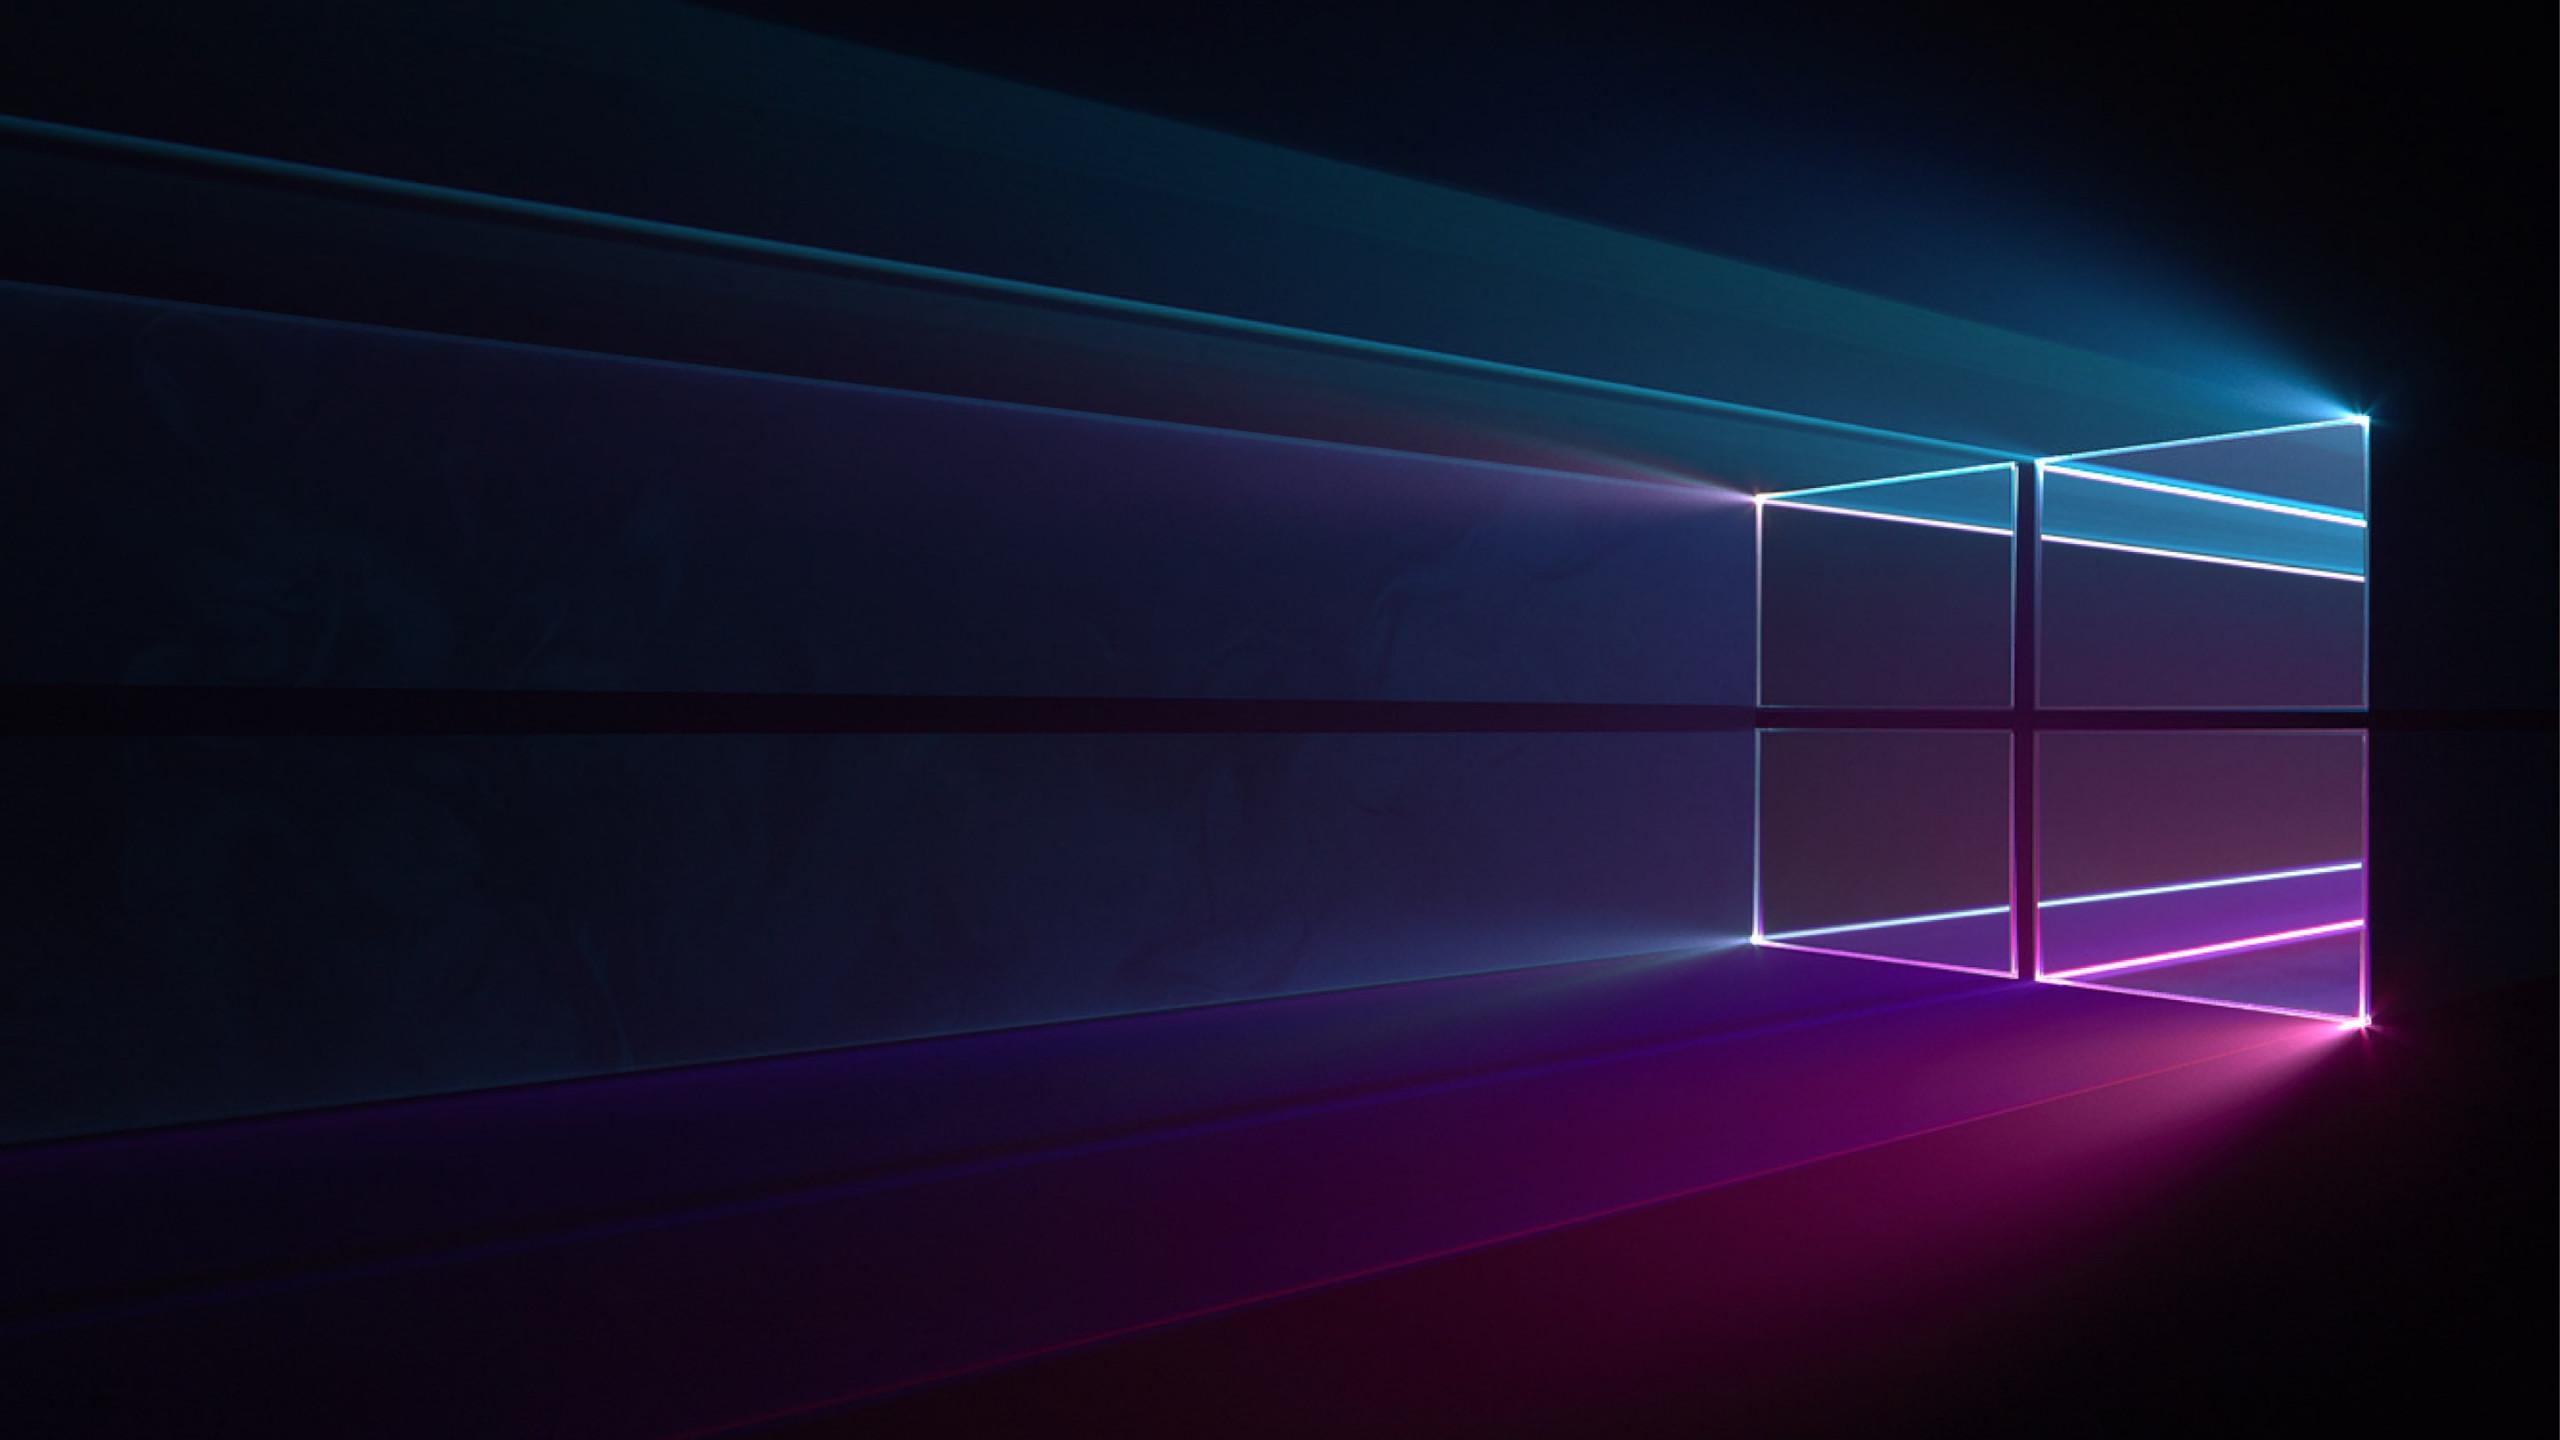 Download wallpaper: Windows 10 Hero 2560x1440